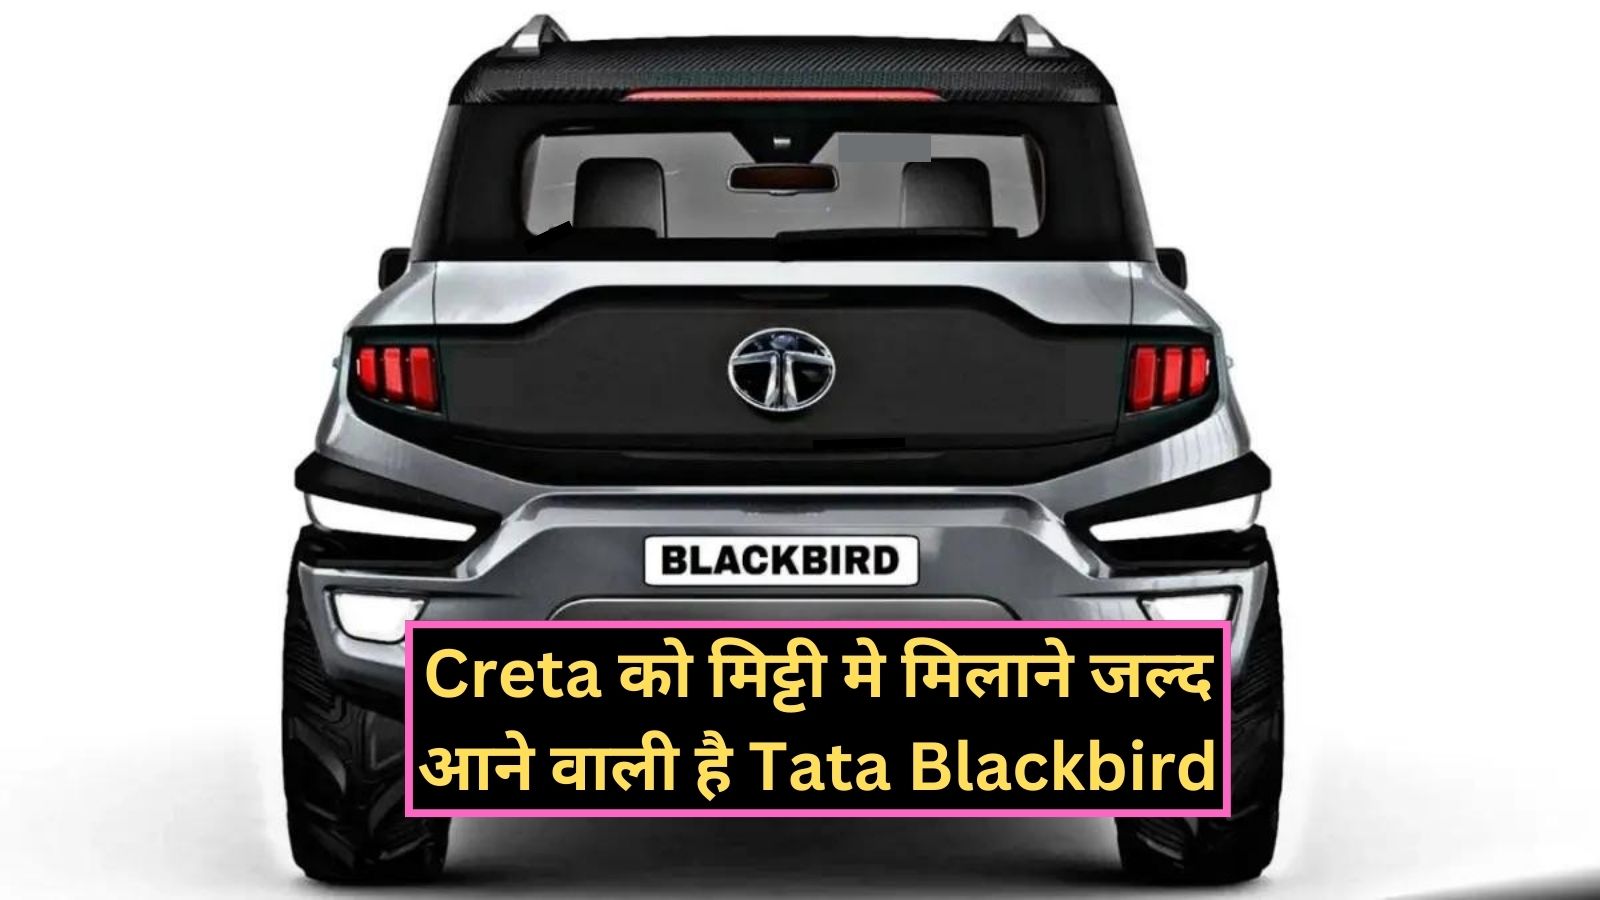 Tata Blackbird: Creta को मिट्टी मे मिलाने जल्द आने वाली है Tata Blackbird, लग्जरी फीचर्स के साथ मिलेगा दमदार इंजन